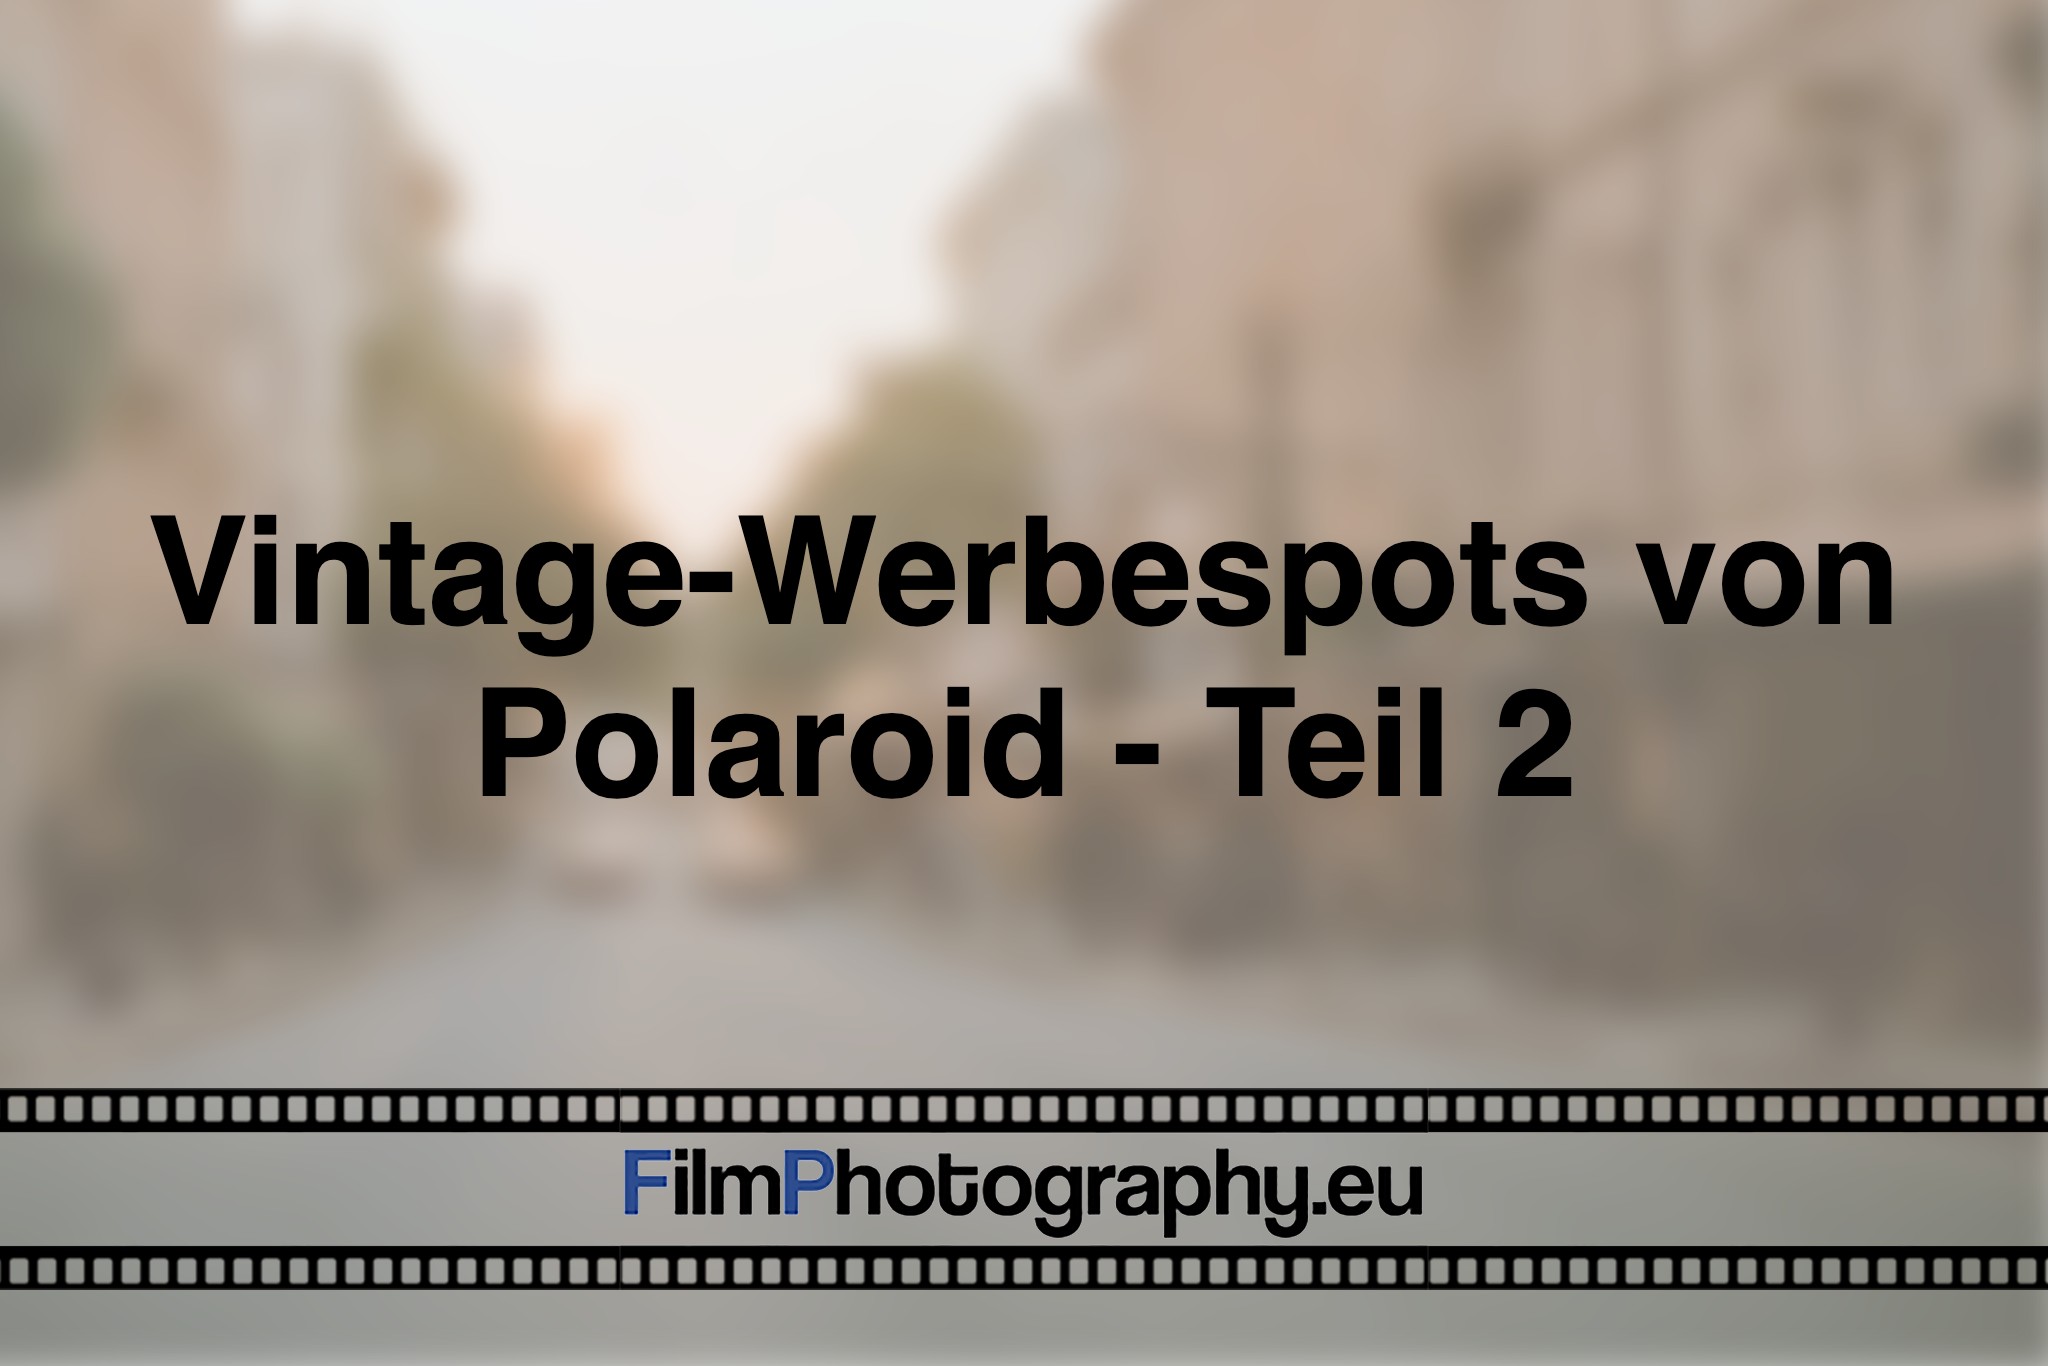 vintage-werbespots-von-polaroid-teil-2-photo-bnv